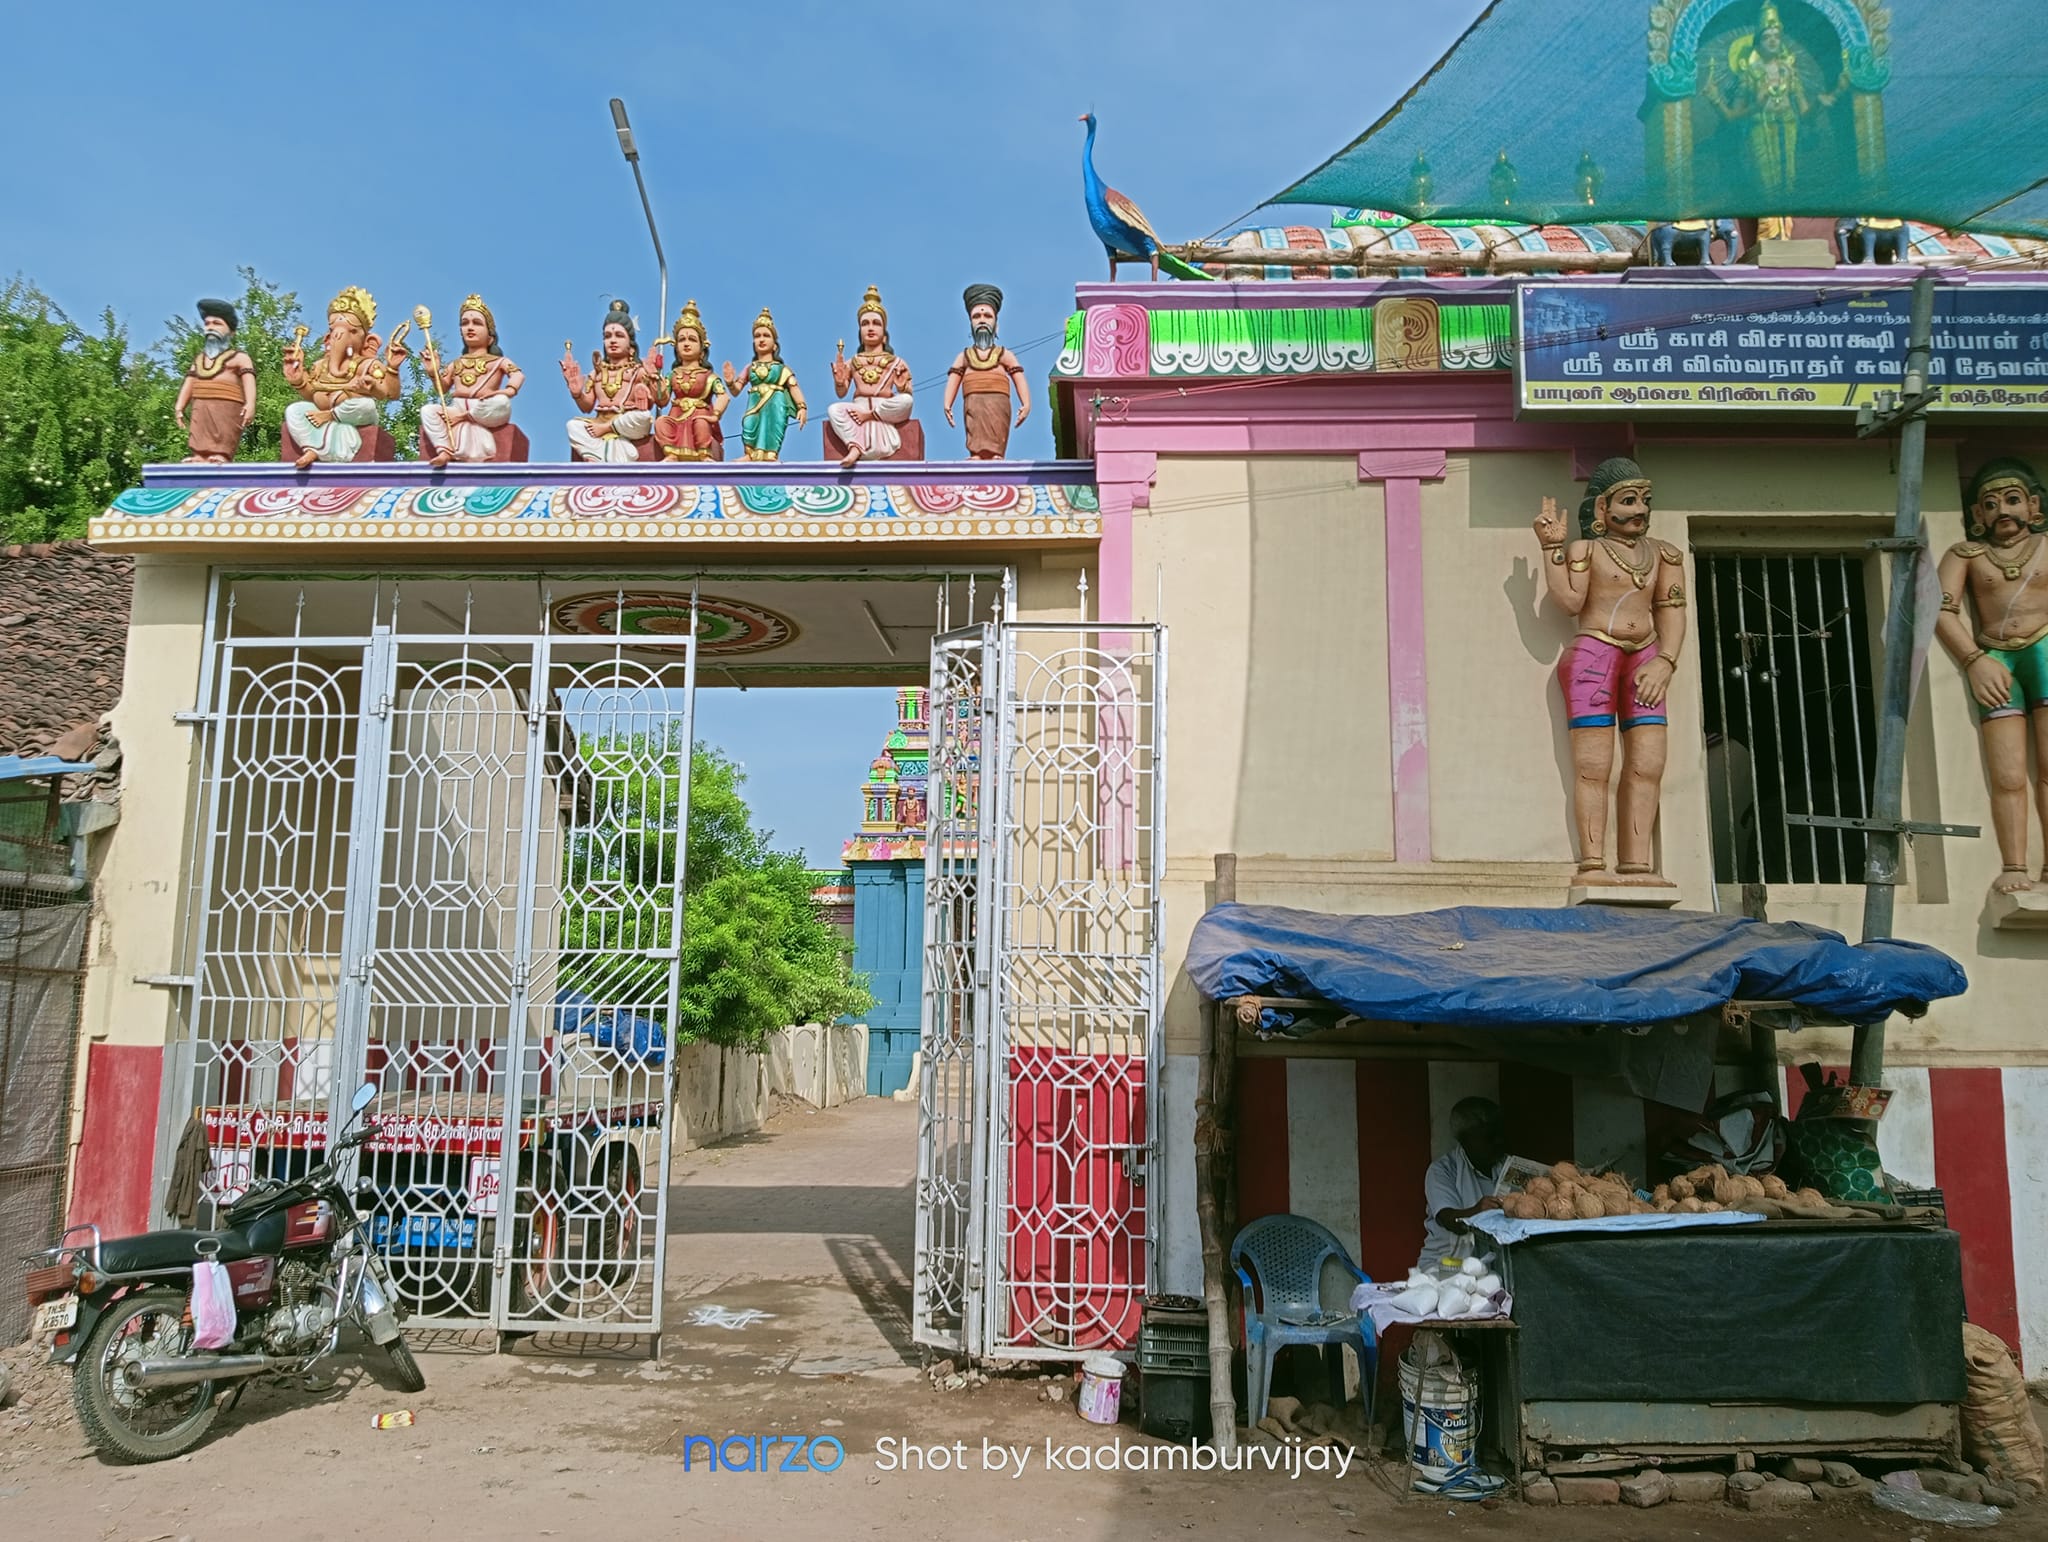 துலாக்கட்டம் காசி விஸ்வநாதர் கோயில், மயிலாடுதுறை